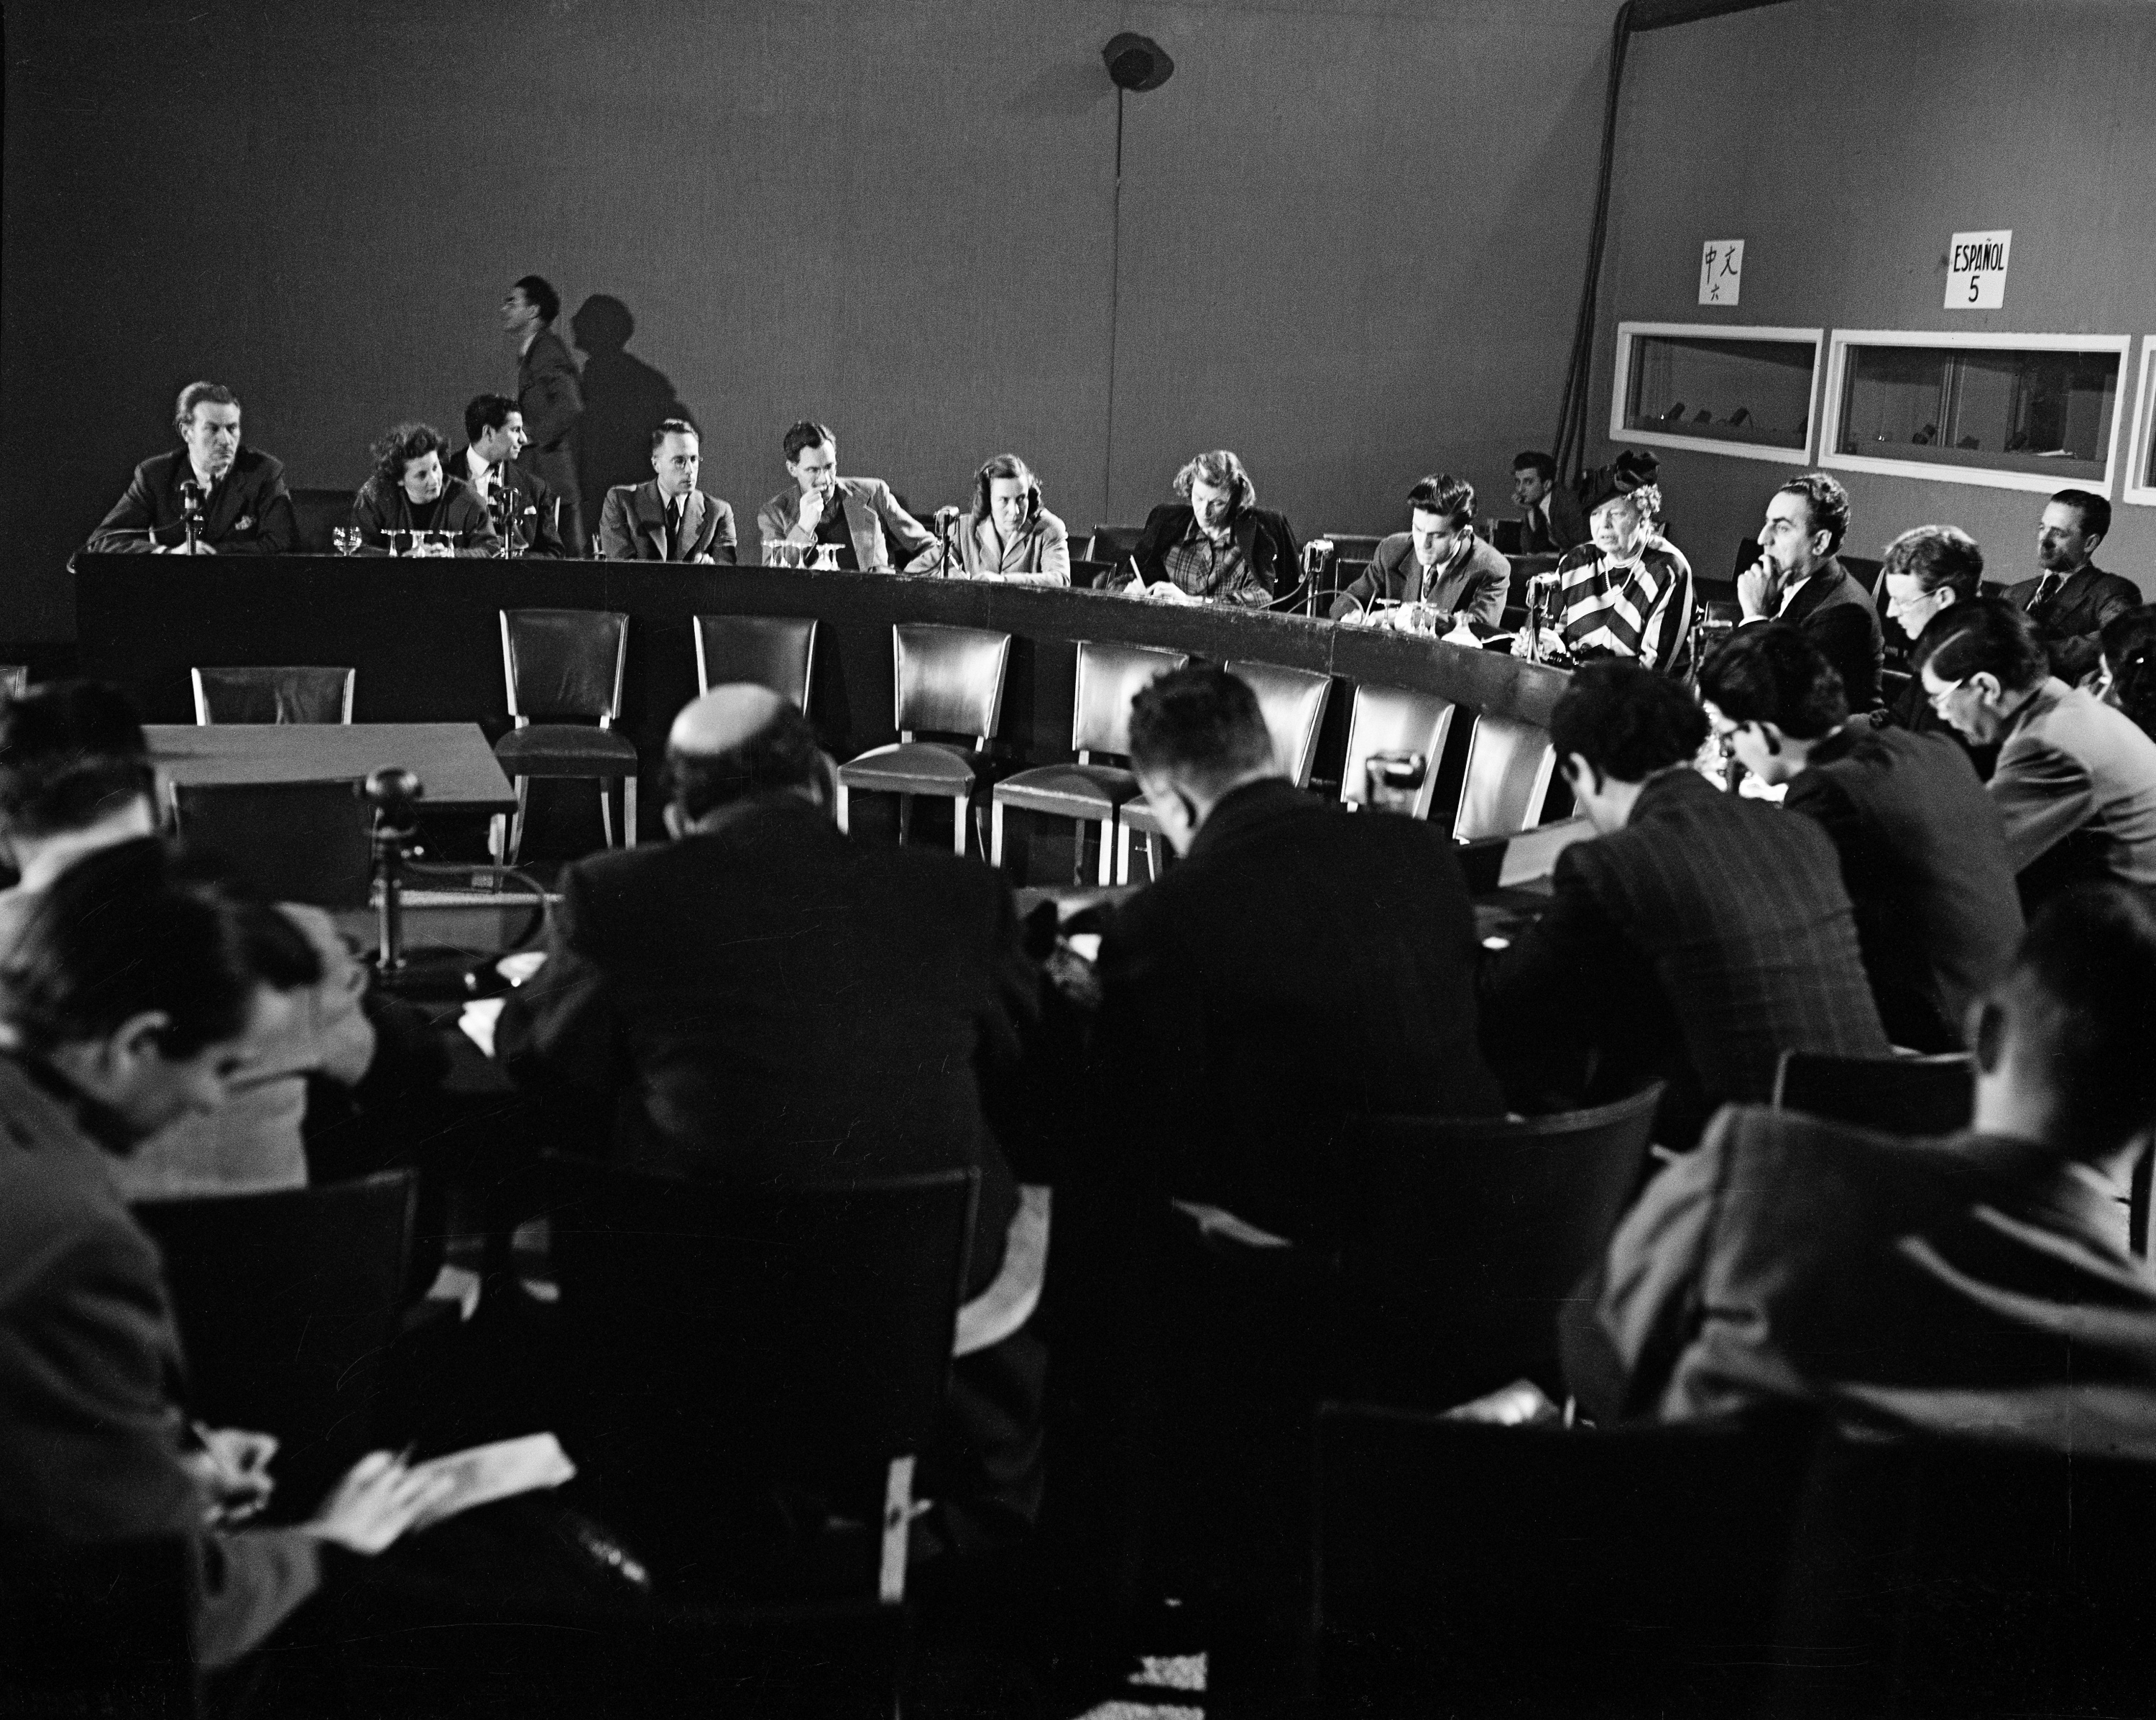 Конвенция 1948. ООН 1948. 1948 Г. Генеральная Ассамблея ООН. Заседания 1948 г. в ООН. Заседание ООН по правам человека 1948.